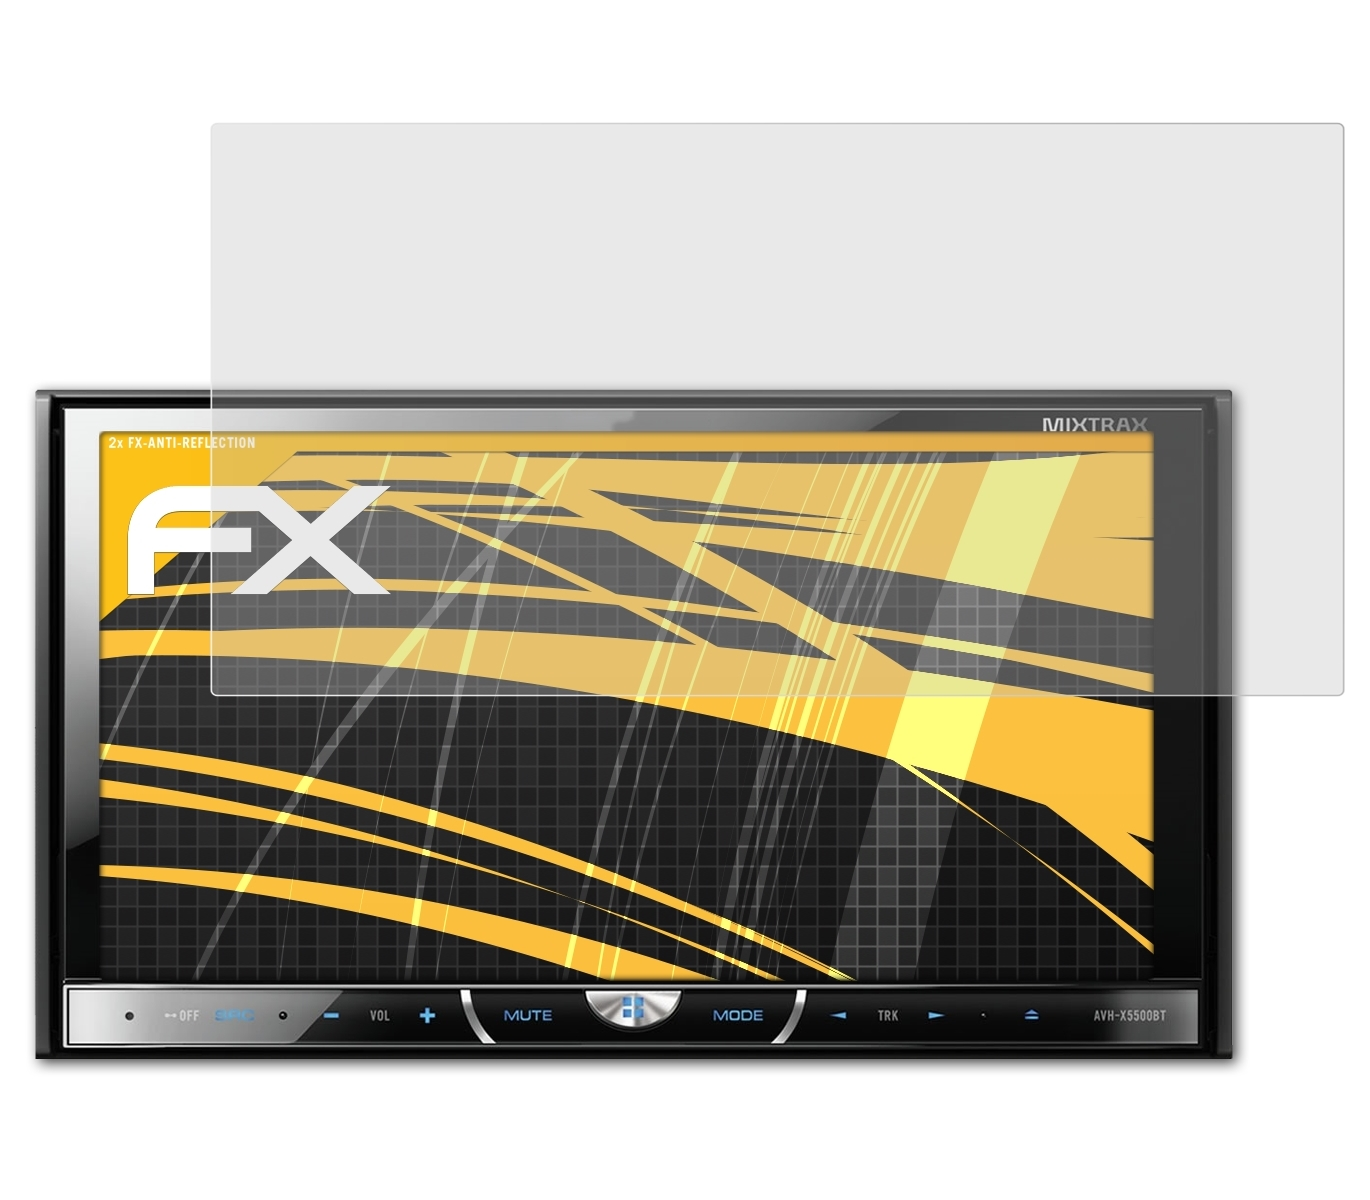 AVH-X5500BT) Displayschutz(für ATFOLIX 2x Pioneer FX-Antireflex